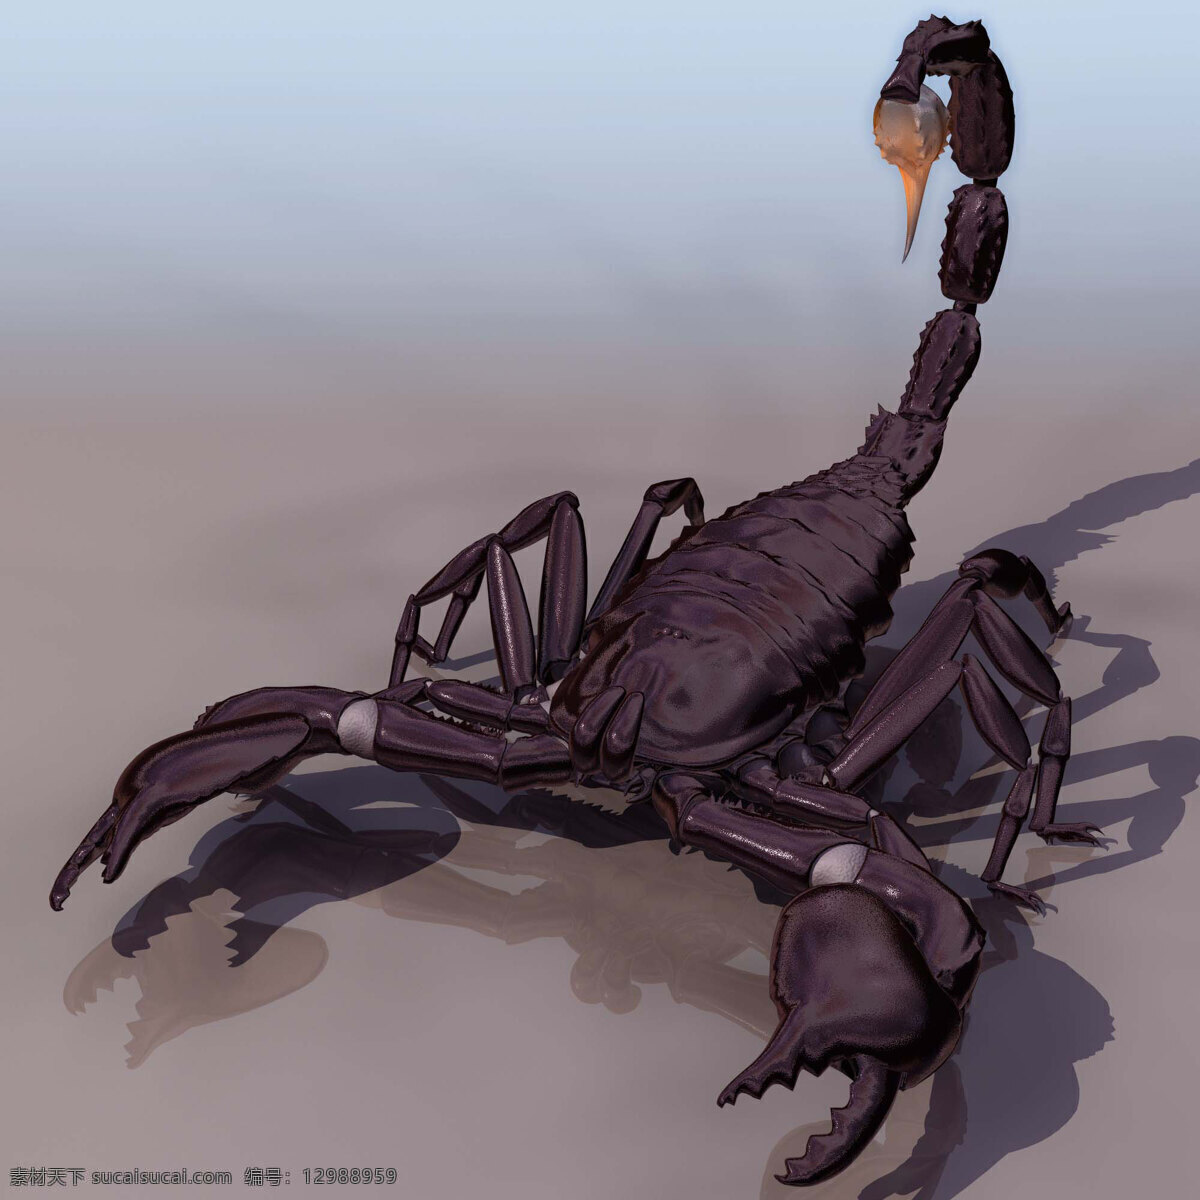 蝎子模型01 scor 蝎子模型 动物模型 陆生动物 3d模型素材 动植物模型